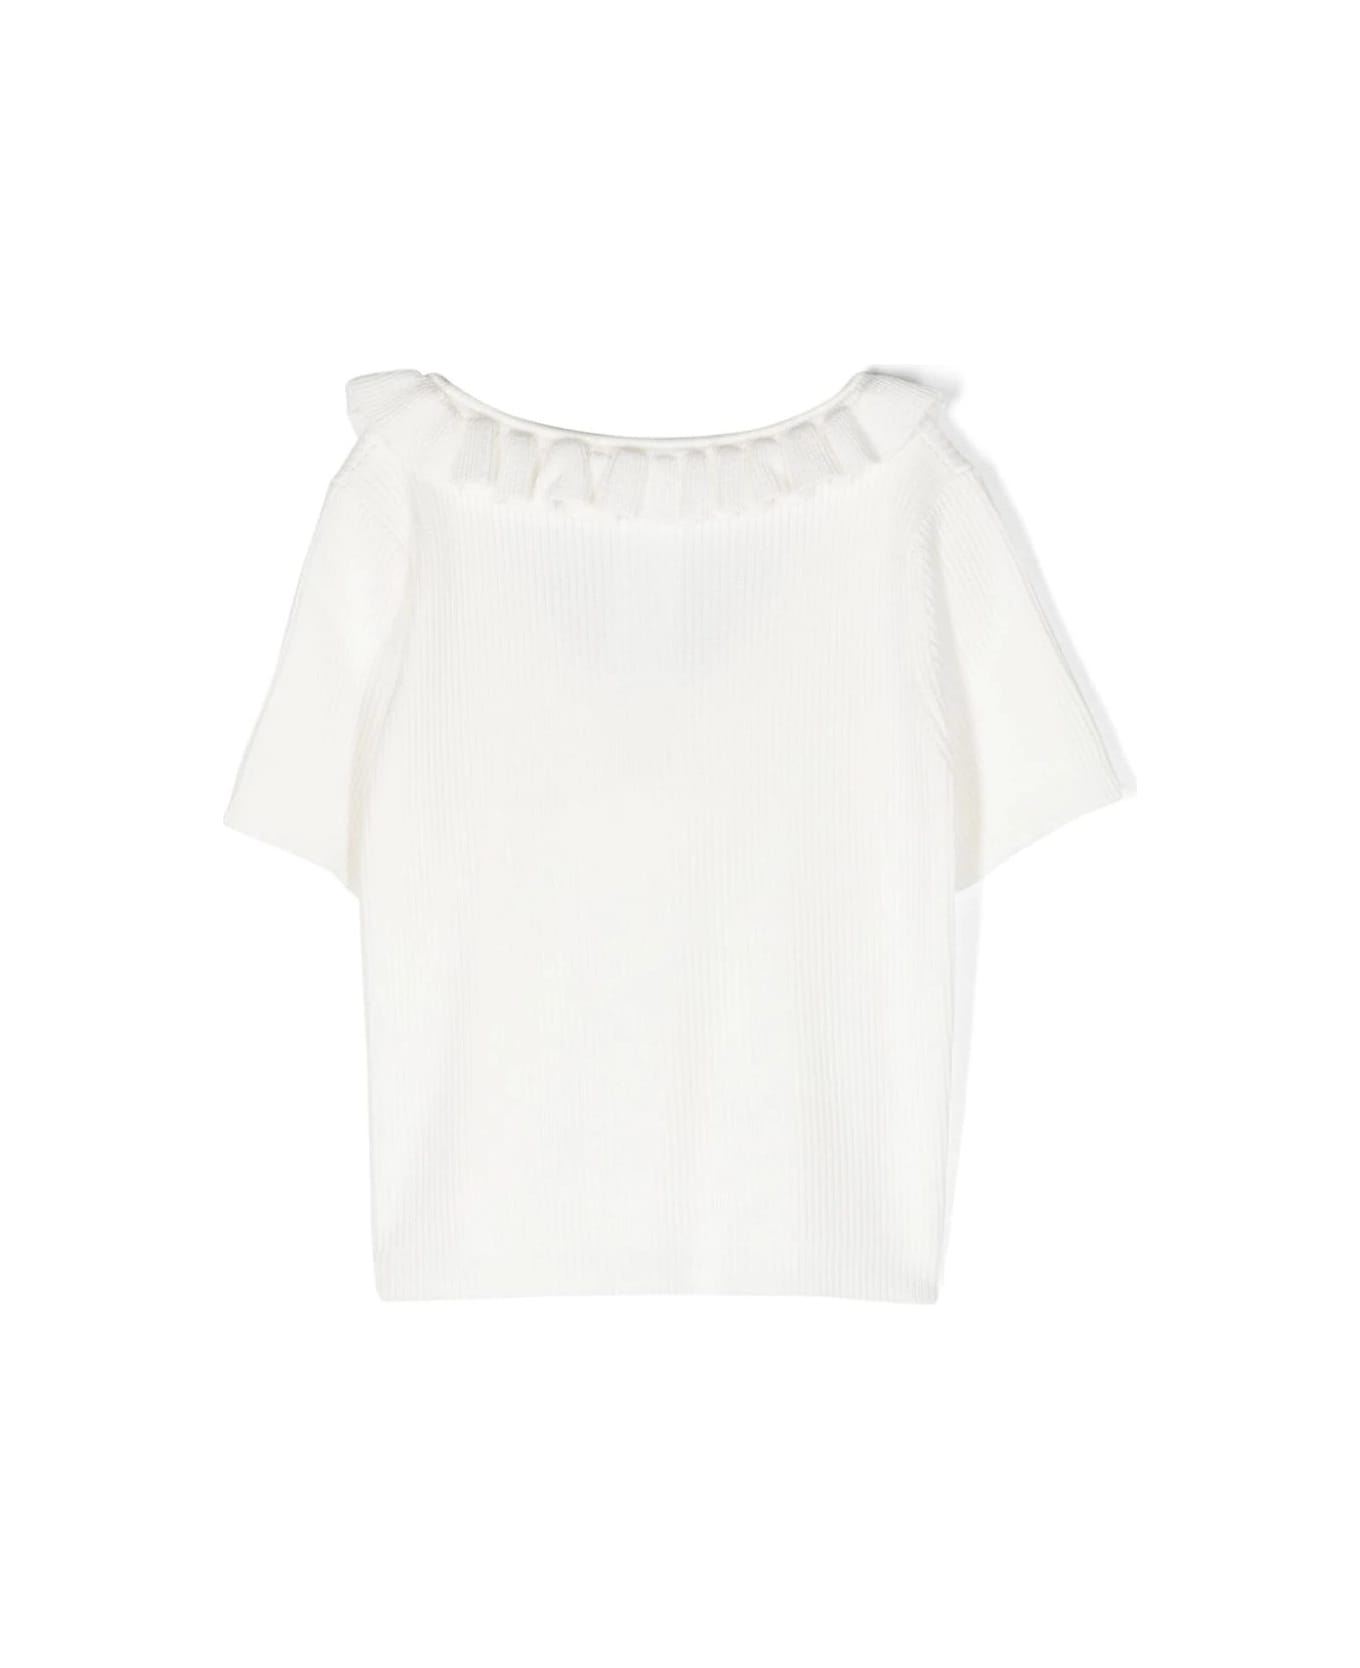 Miss Blumarine White Ribbed T-shirt With Ruffles - Bianco